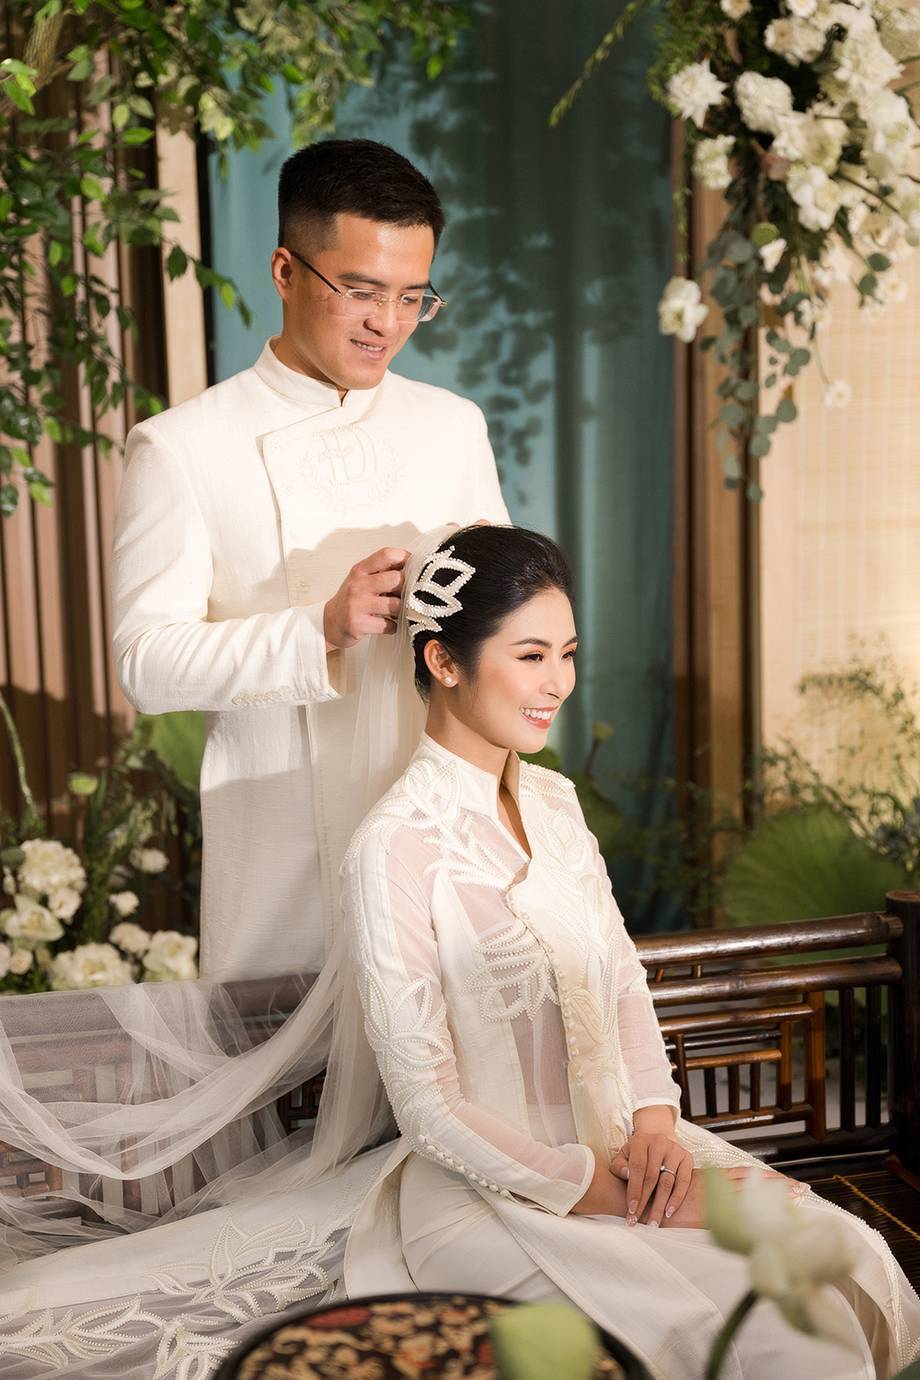  
Hình ảnh xinh đẹp của cô dâu Ngọc Hân trong ngày trọng đại. (Ảnh: Vũ Đoàn Team) 